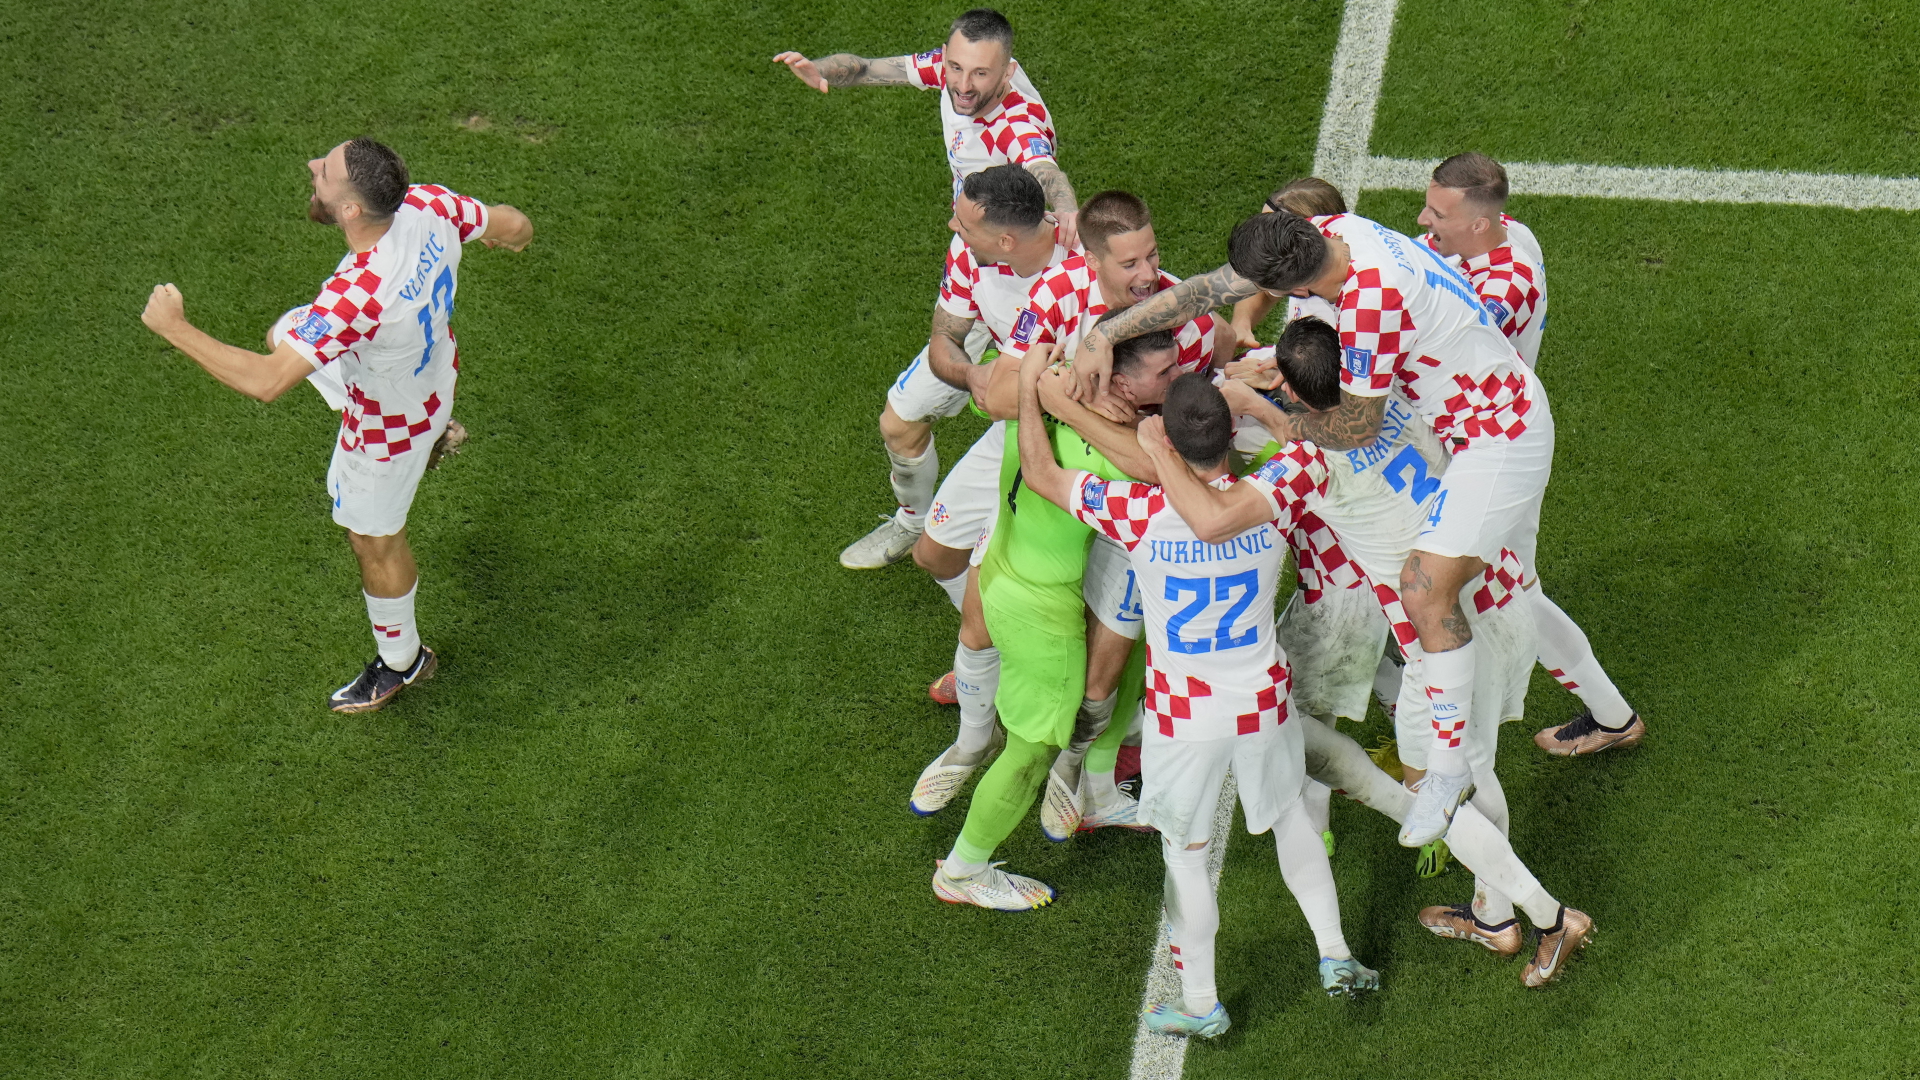  Kroatiens Spieler jubeln nach dem entscheidenden Elfmeter zur Spielentscheidung.  | dpa